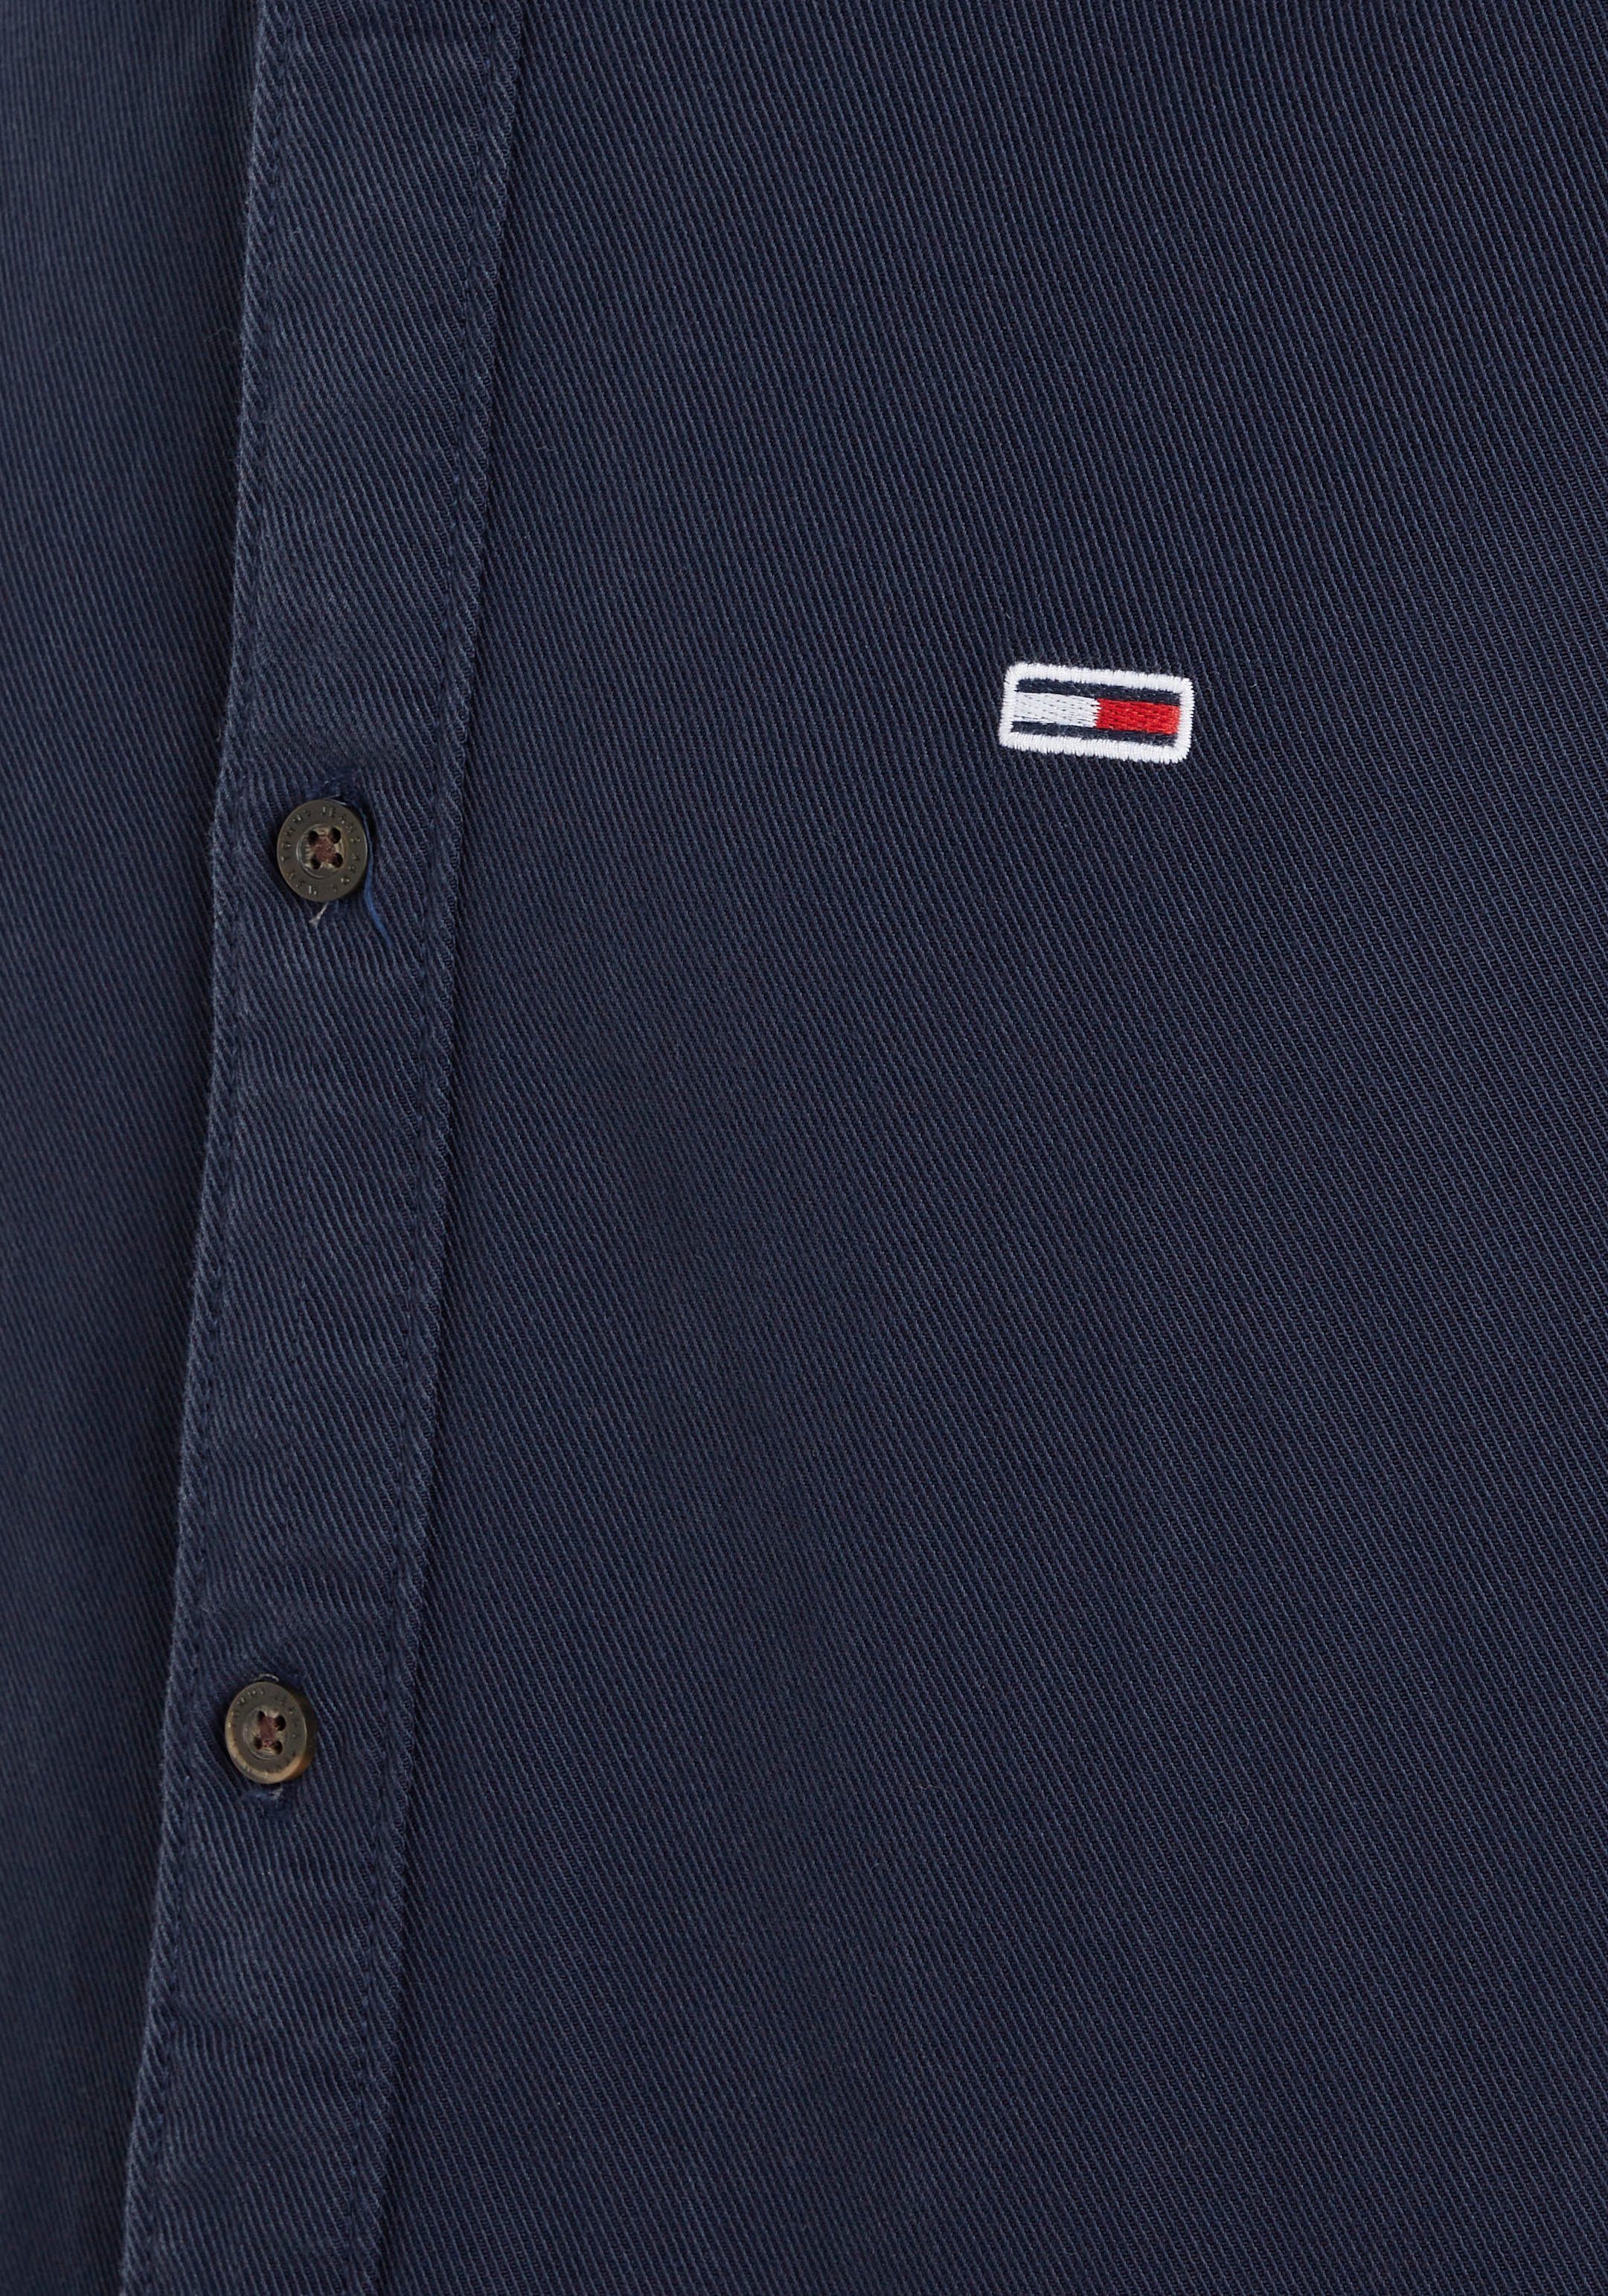 Jeans Tommy SHIRT Knopfleiste mit blue ESSENTIAL TJM Langarmhemd durchgehender REG